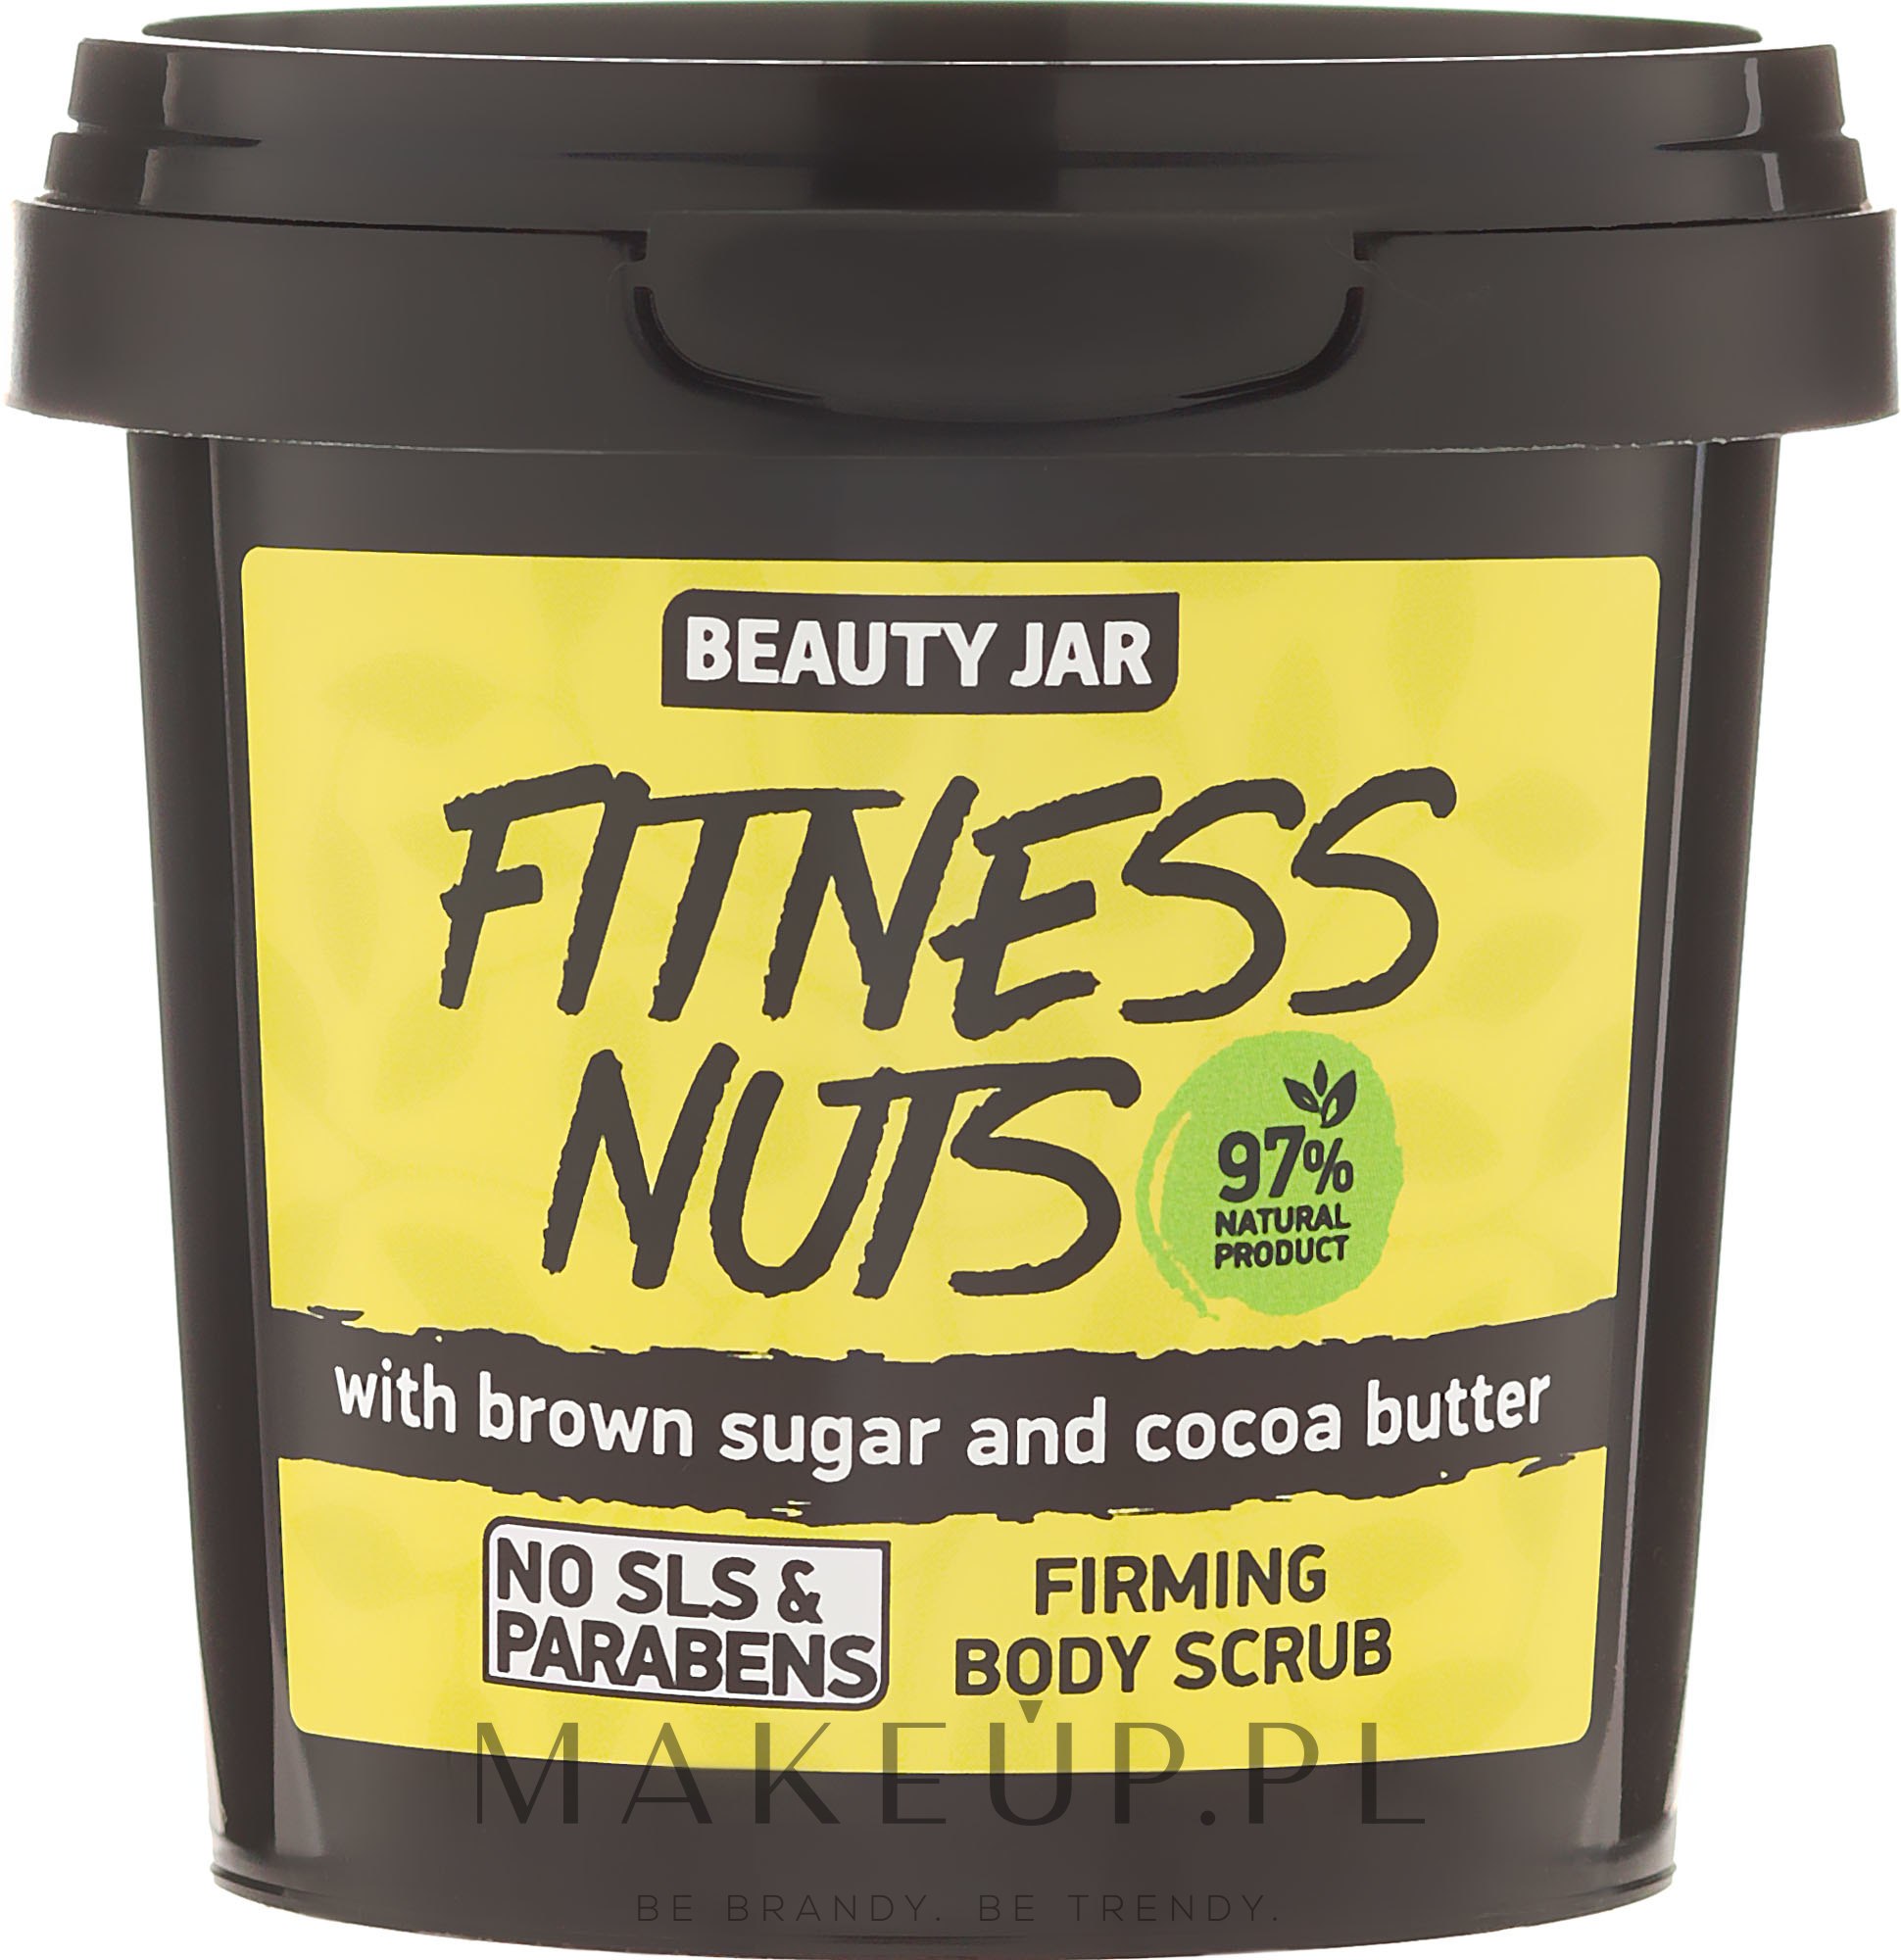 Ujędrniający peeling do ciała z brązowym cukrem i masłem kakaowym - Beauty Jar Fitness Nuts Firming Body Scrub — Zdjęcie 200 g